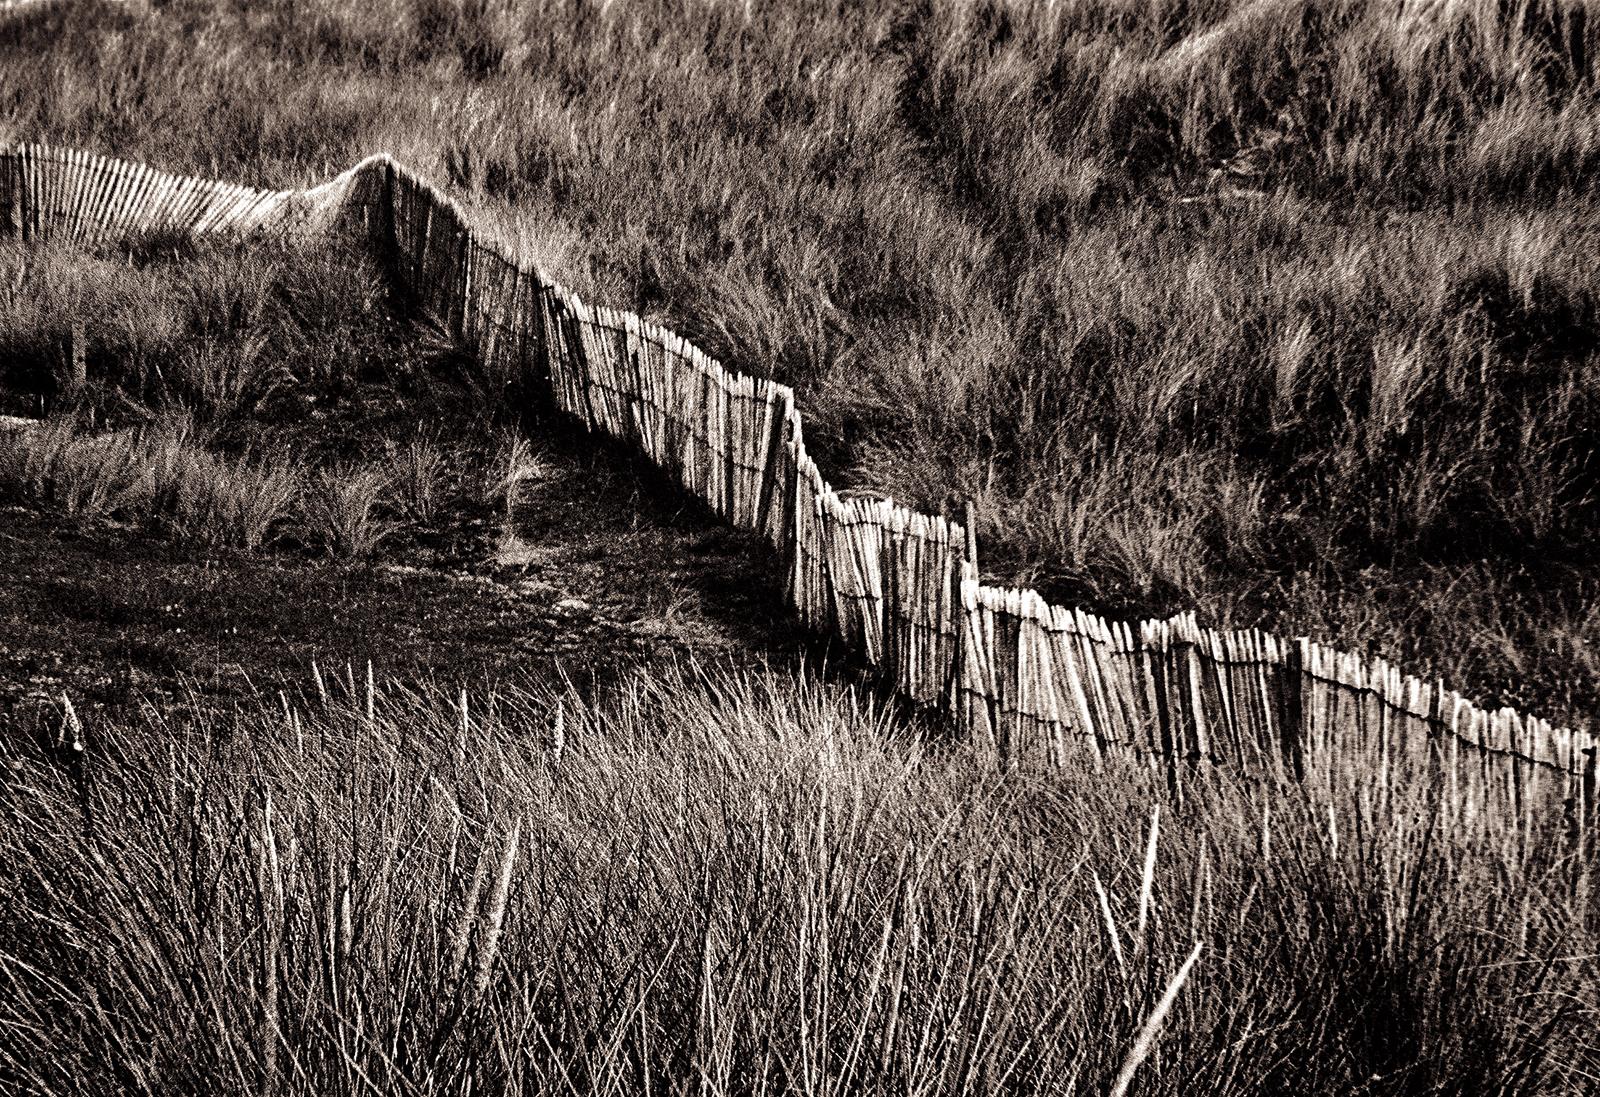 Dune - Signierter Kunstdruck in limitierter Auflage, schwarz weiß sepia, Landschaft braun (Zeitgenössisch), Photograph, von Ian Sanderson